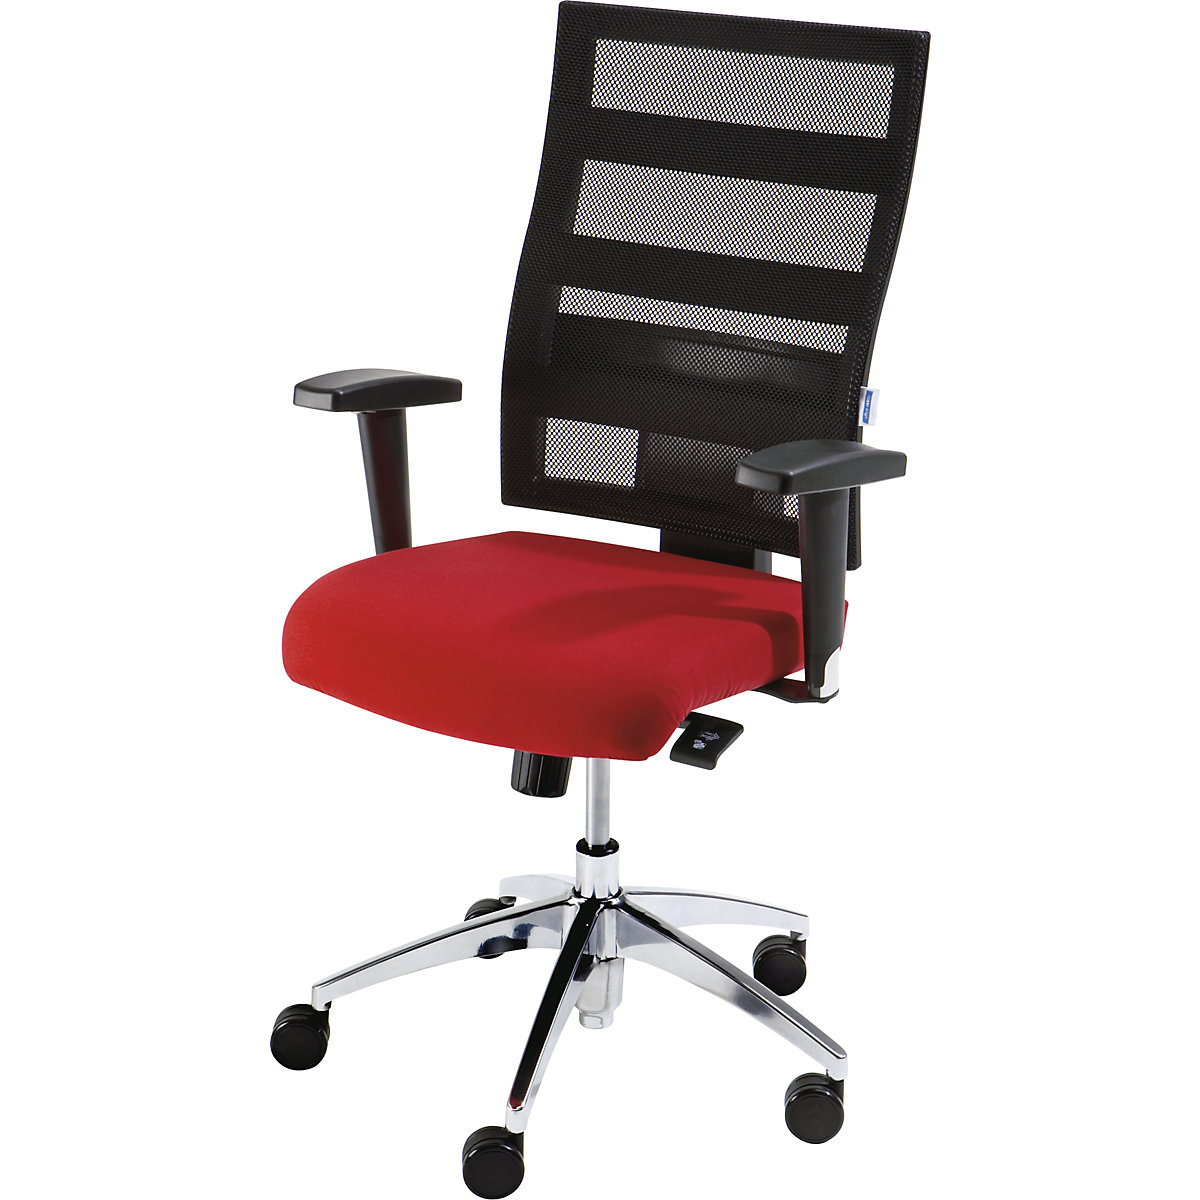 Udobna okretna stolica, visina naslona za leđa 550 mm – eurokraft pro, točkasta sinkrona mehanika, plosnato sjedalo, sjedalo u crvenoj boji, mrežasti naslon u crnoj boji-3